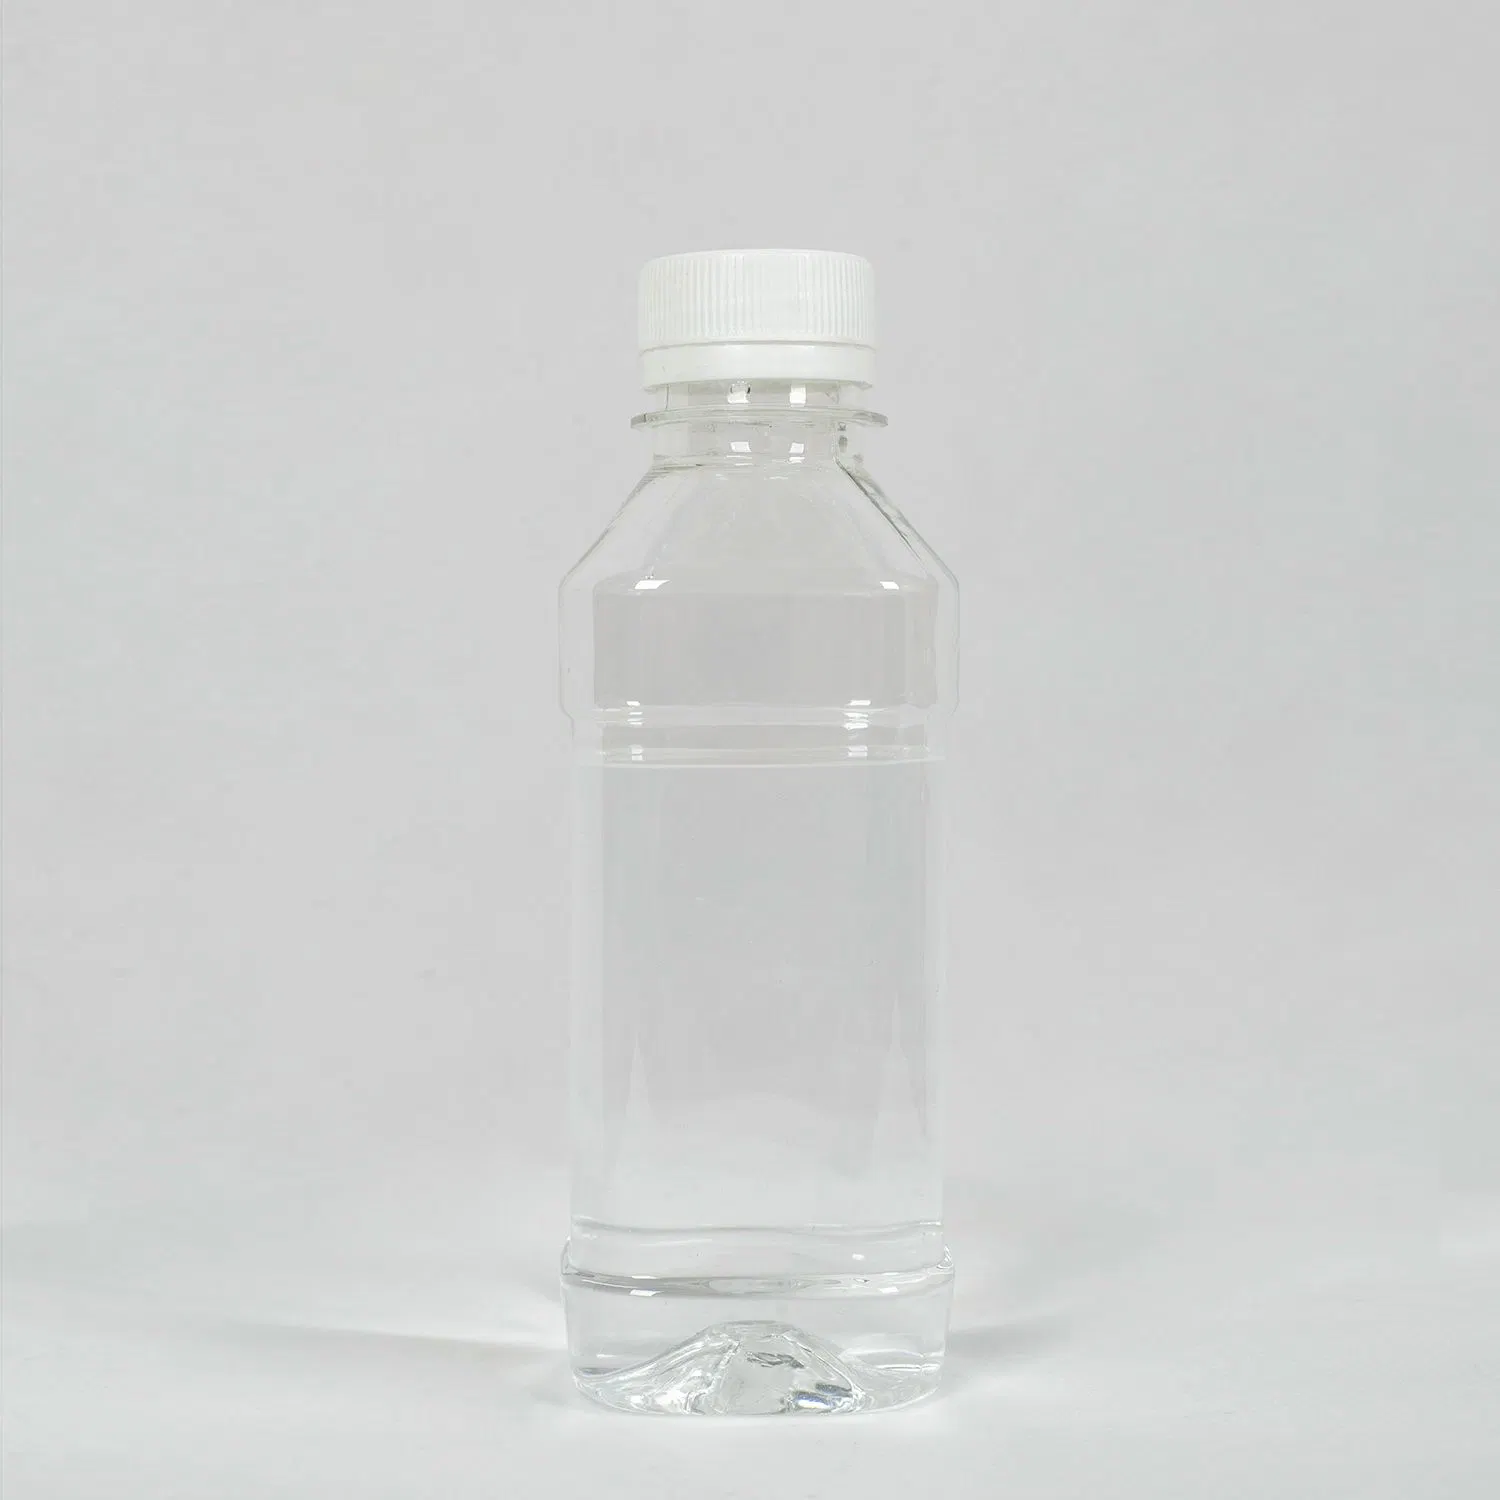 Высококачественные пластификаторы с использованием эпоксидной кислоты и метилового эфира, содержащие ПВХ Для ПВХ